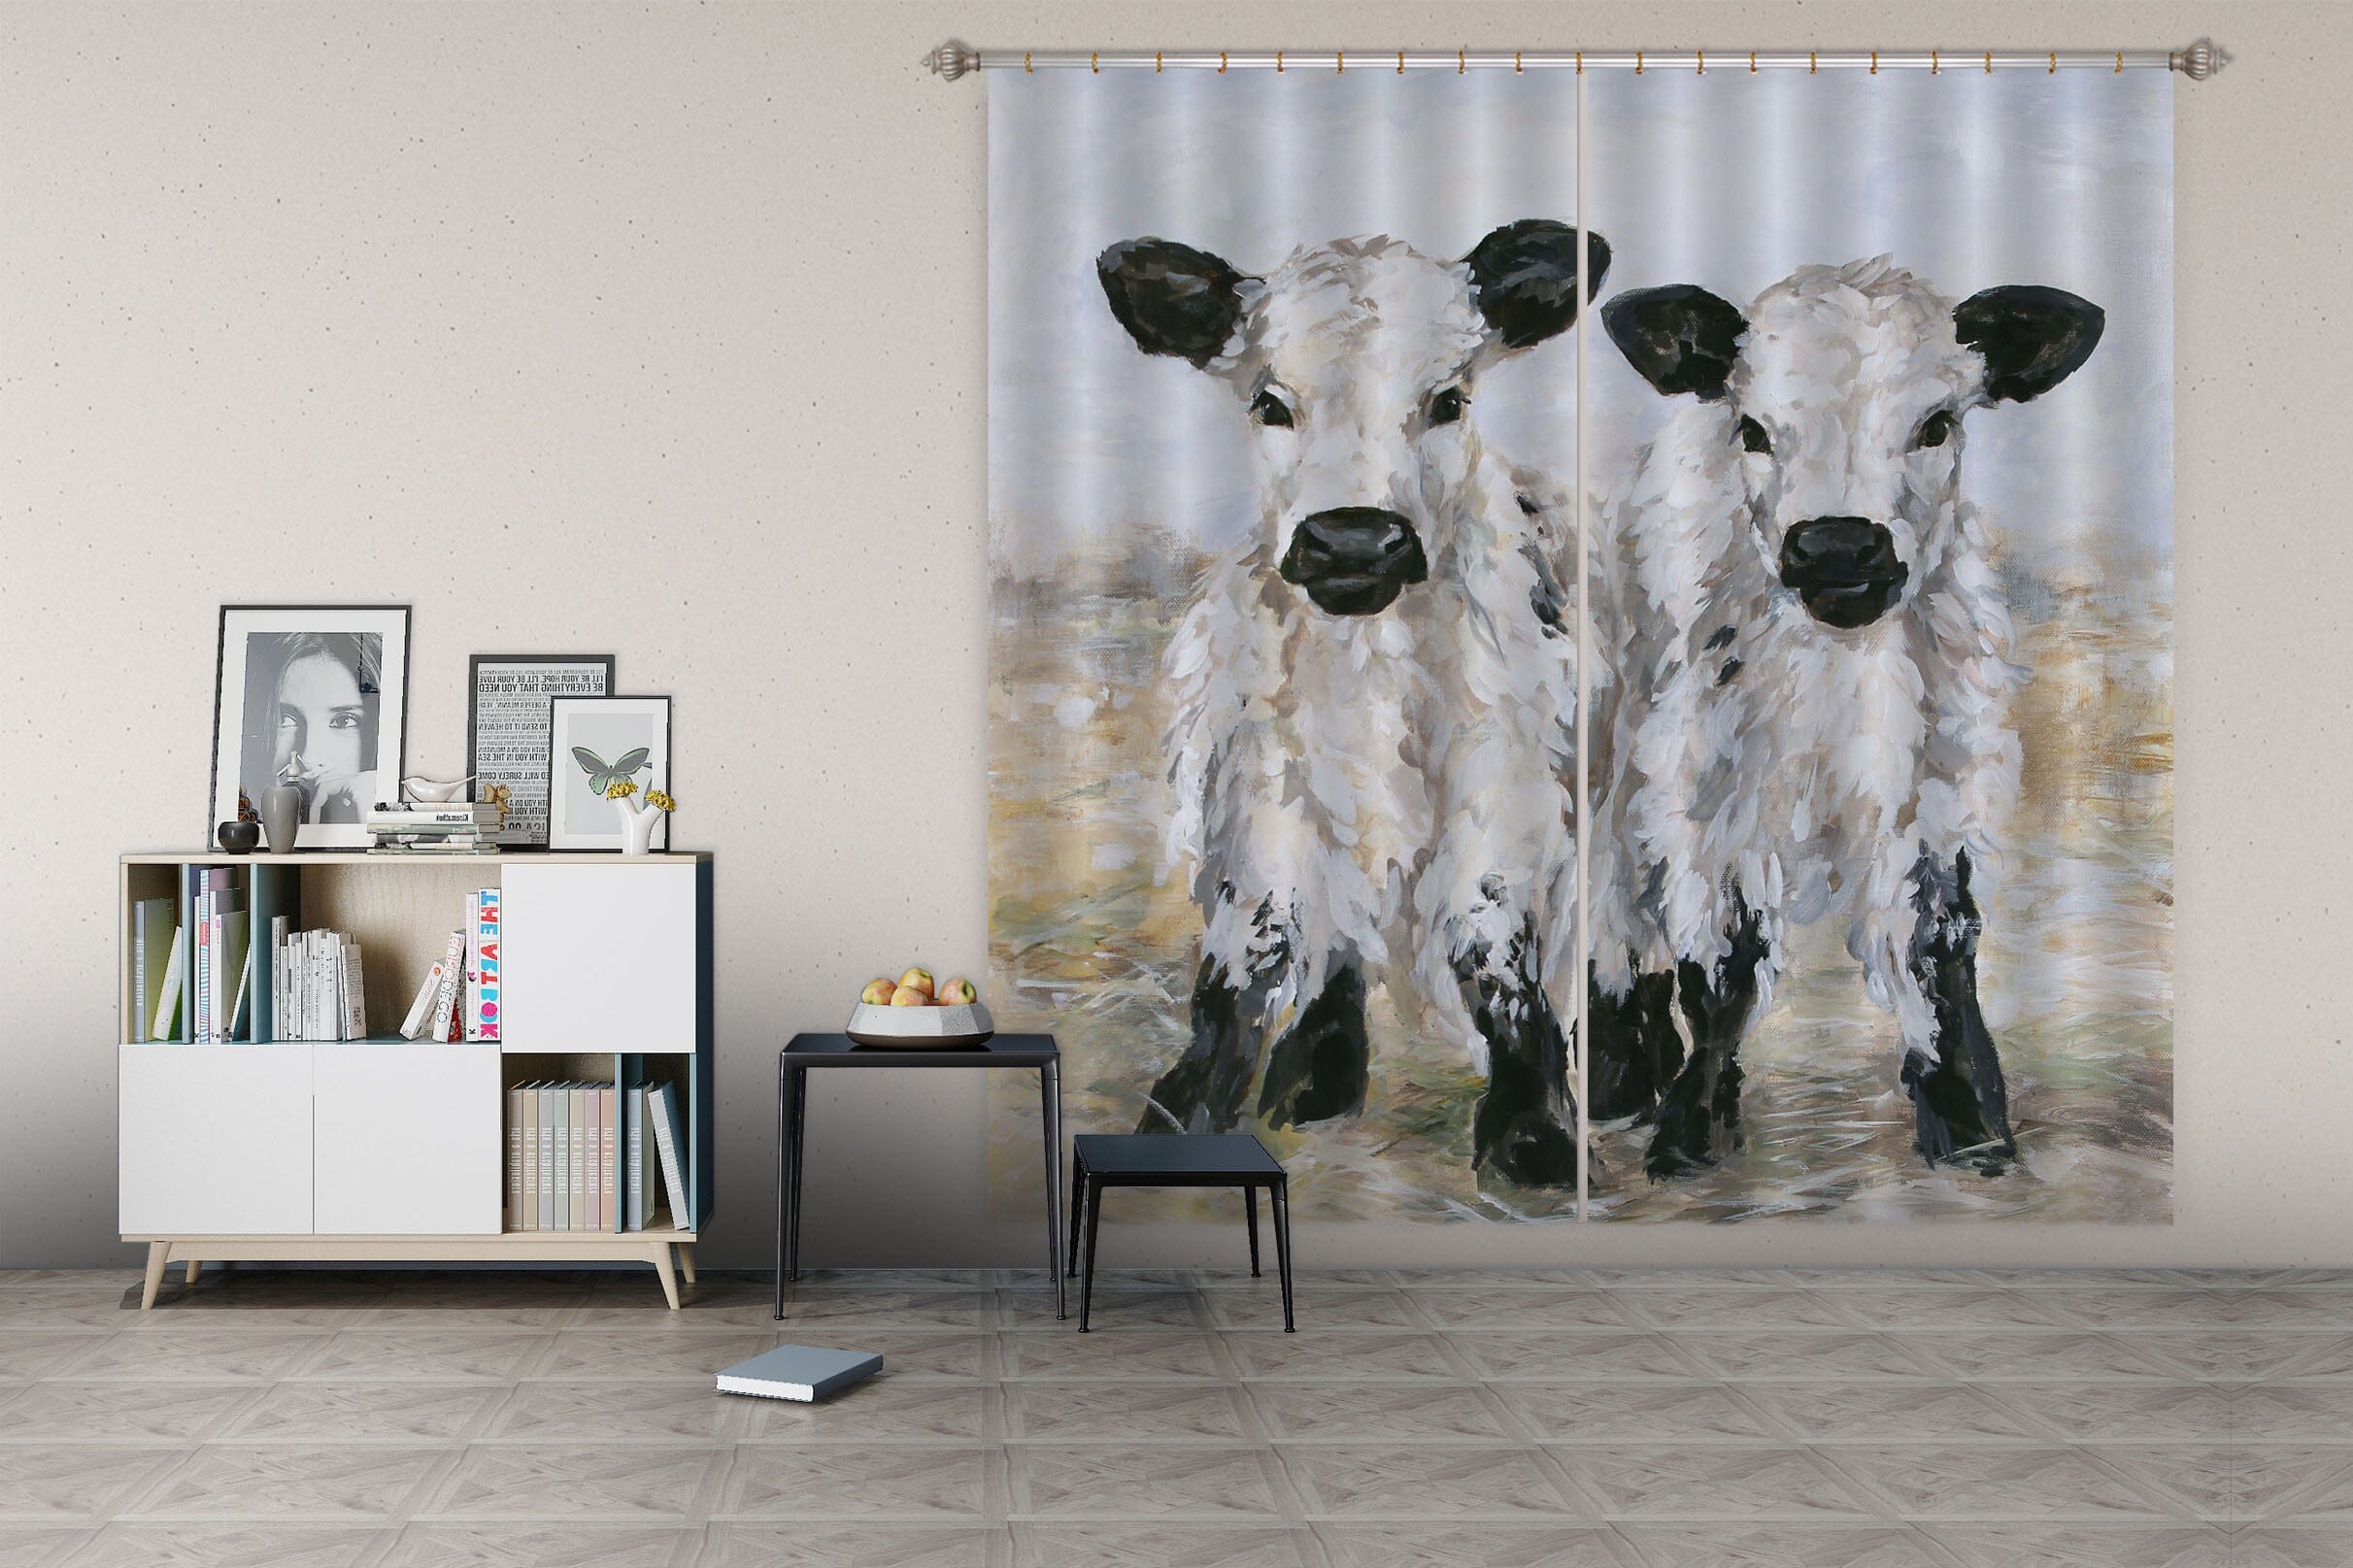 3D Small Cow 048 Debi Coules Curtain Curtains Drapes Curtains AJ Creativity Home 